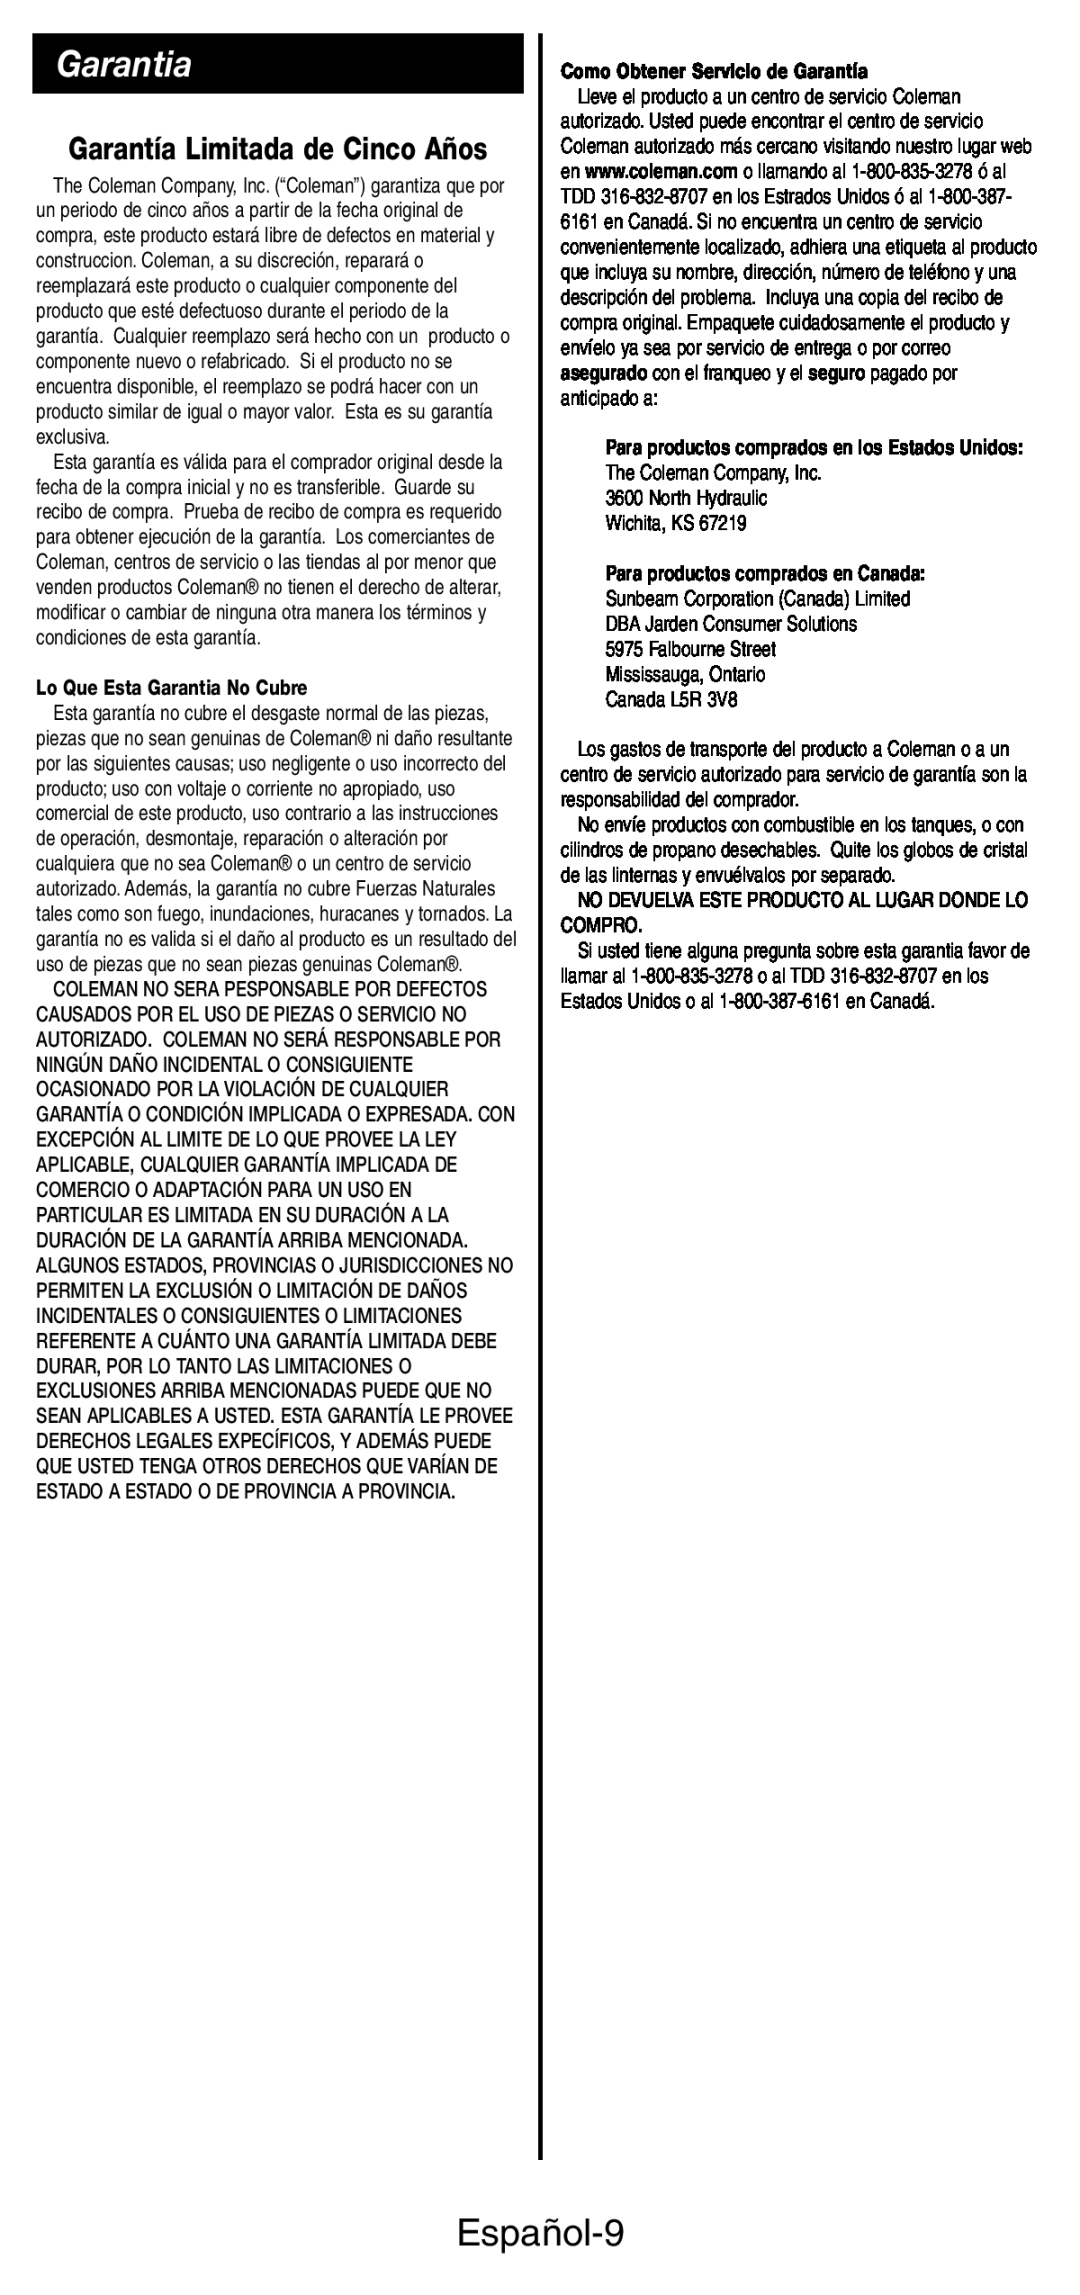 Coleman 5444 Series manual Español-9, Garantía Limitada de Cinco Años, Lo Que Esta Garantia No Cubre 